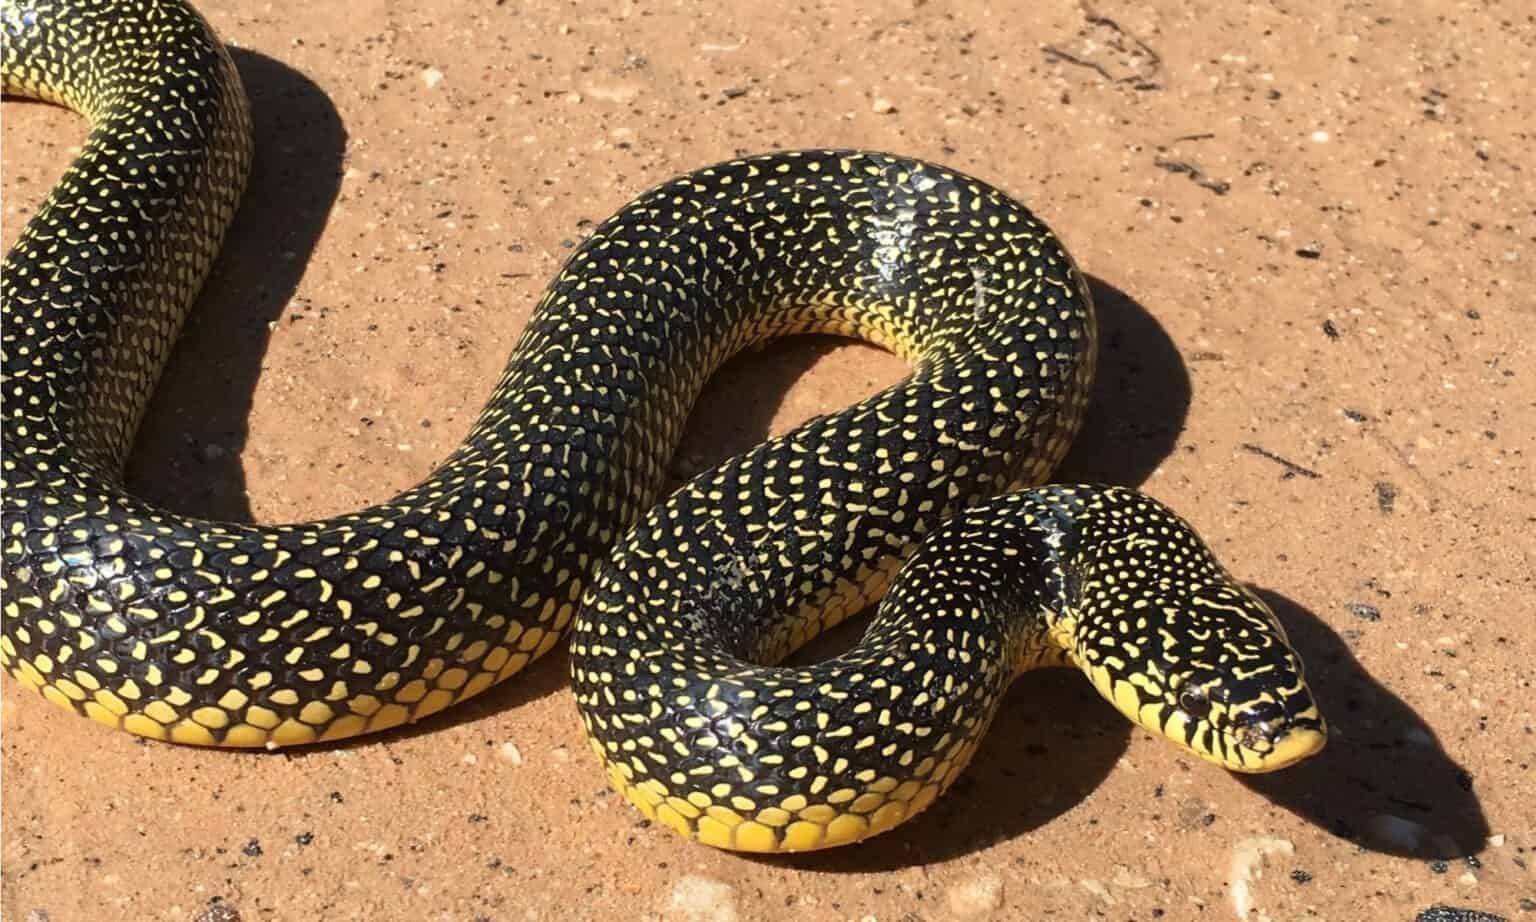 斑点王蛇斑点家蛇,或斑点岩蛇,生活在澳大利亚和南非的许多岩石地区